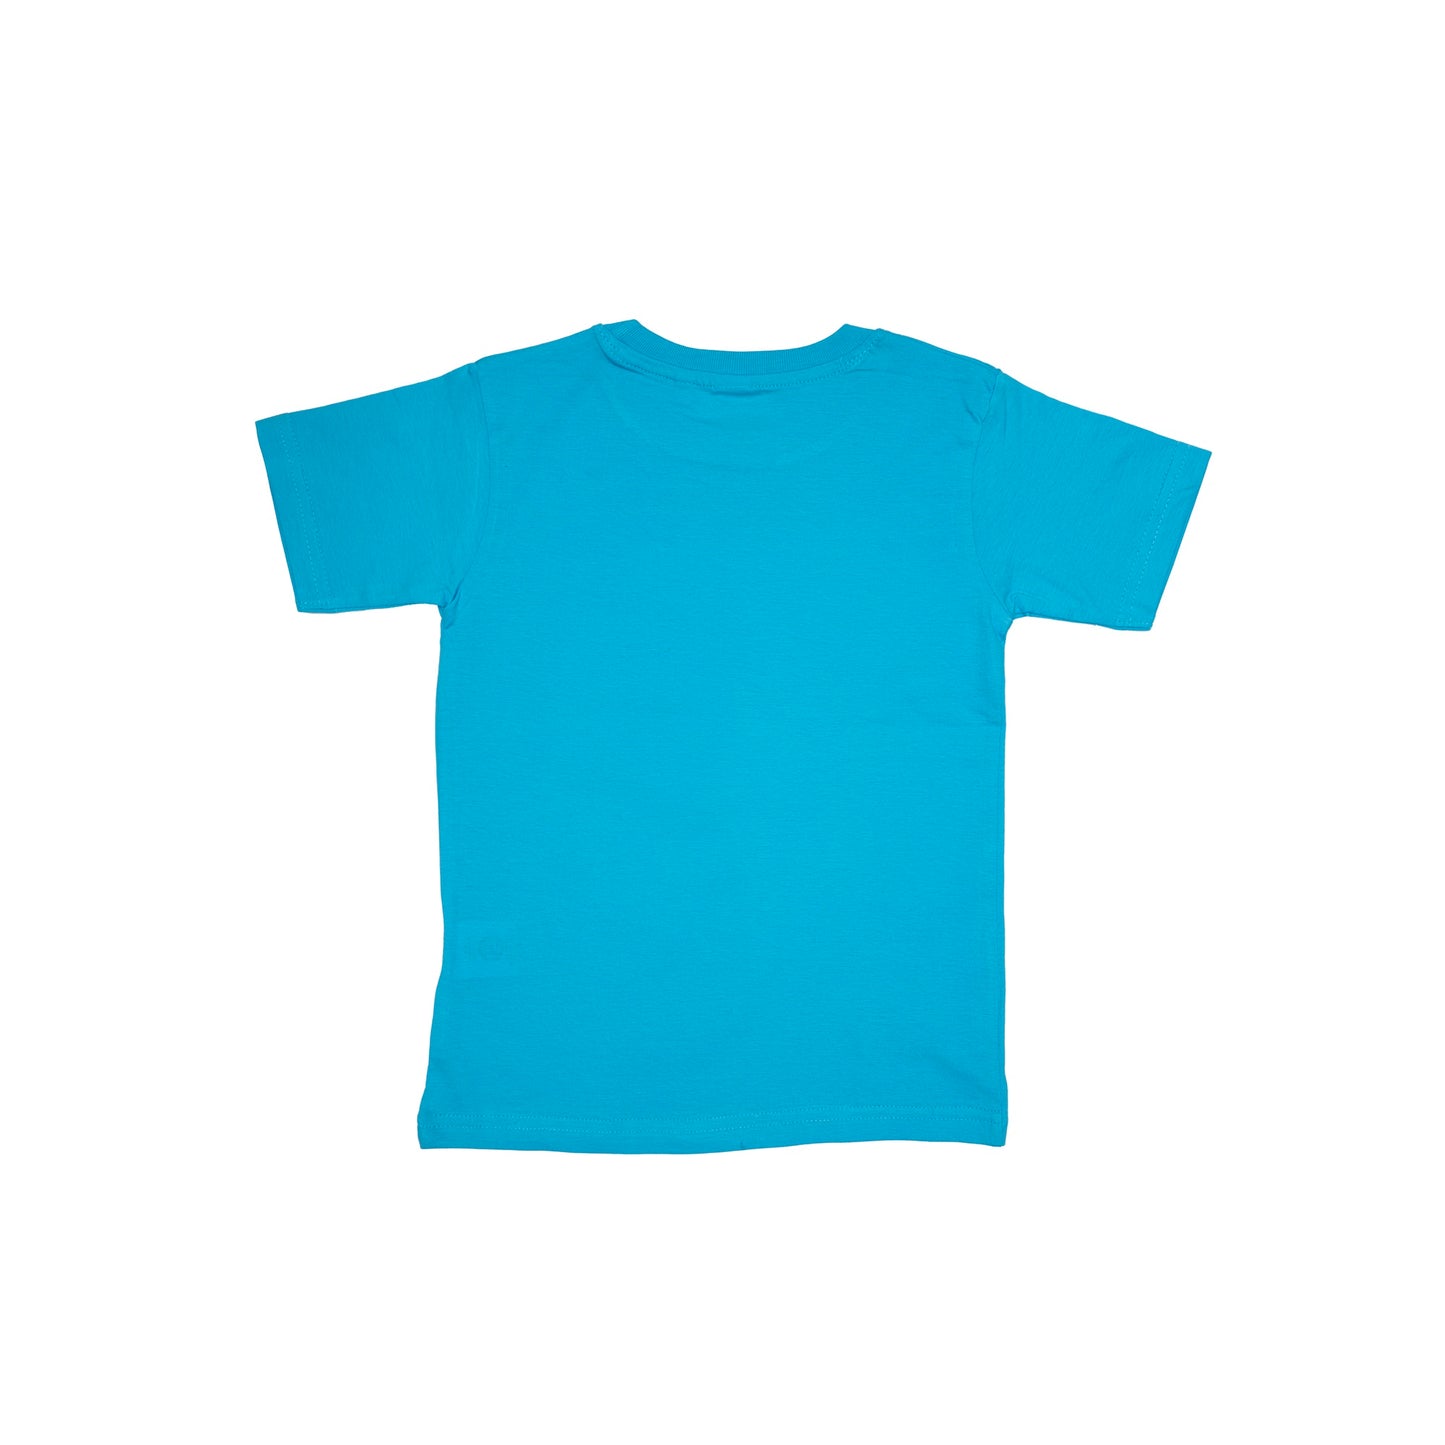 Mushroom_Feelin Mushy T-shirt (Sky Blue)